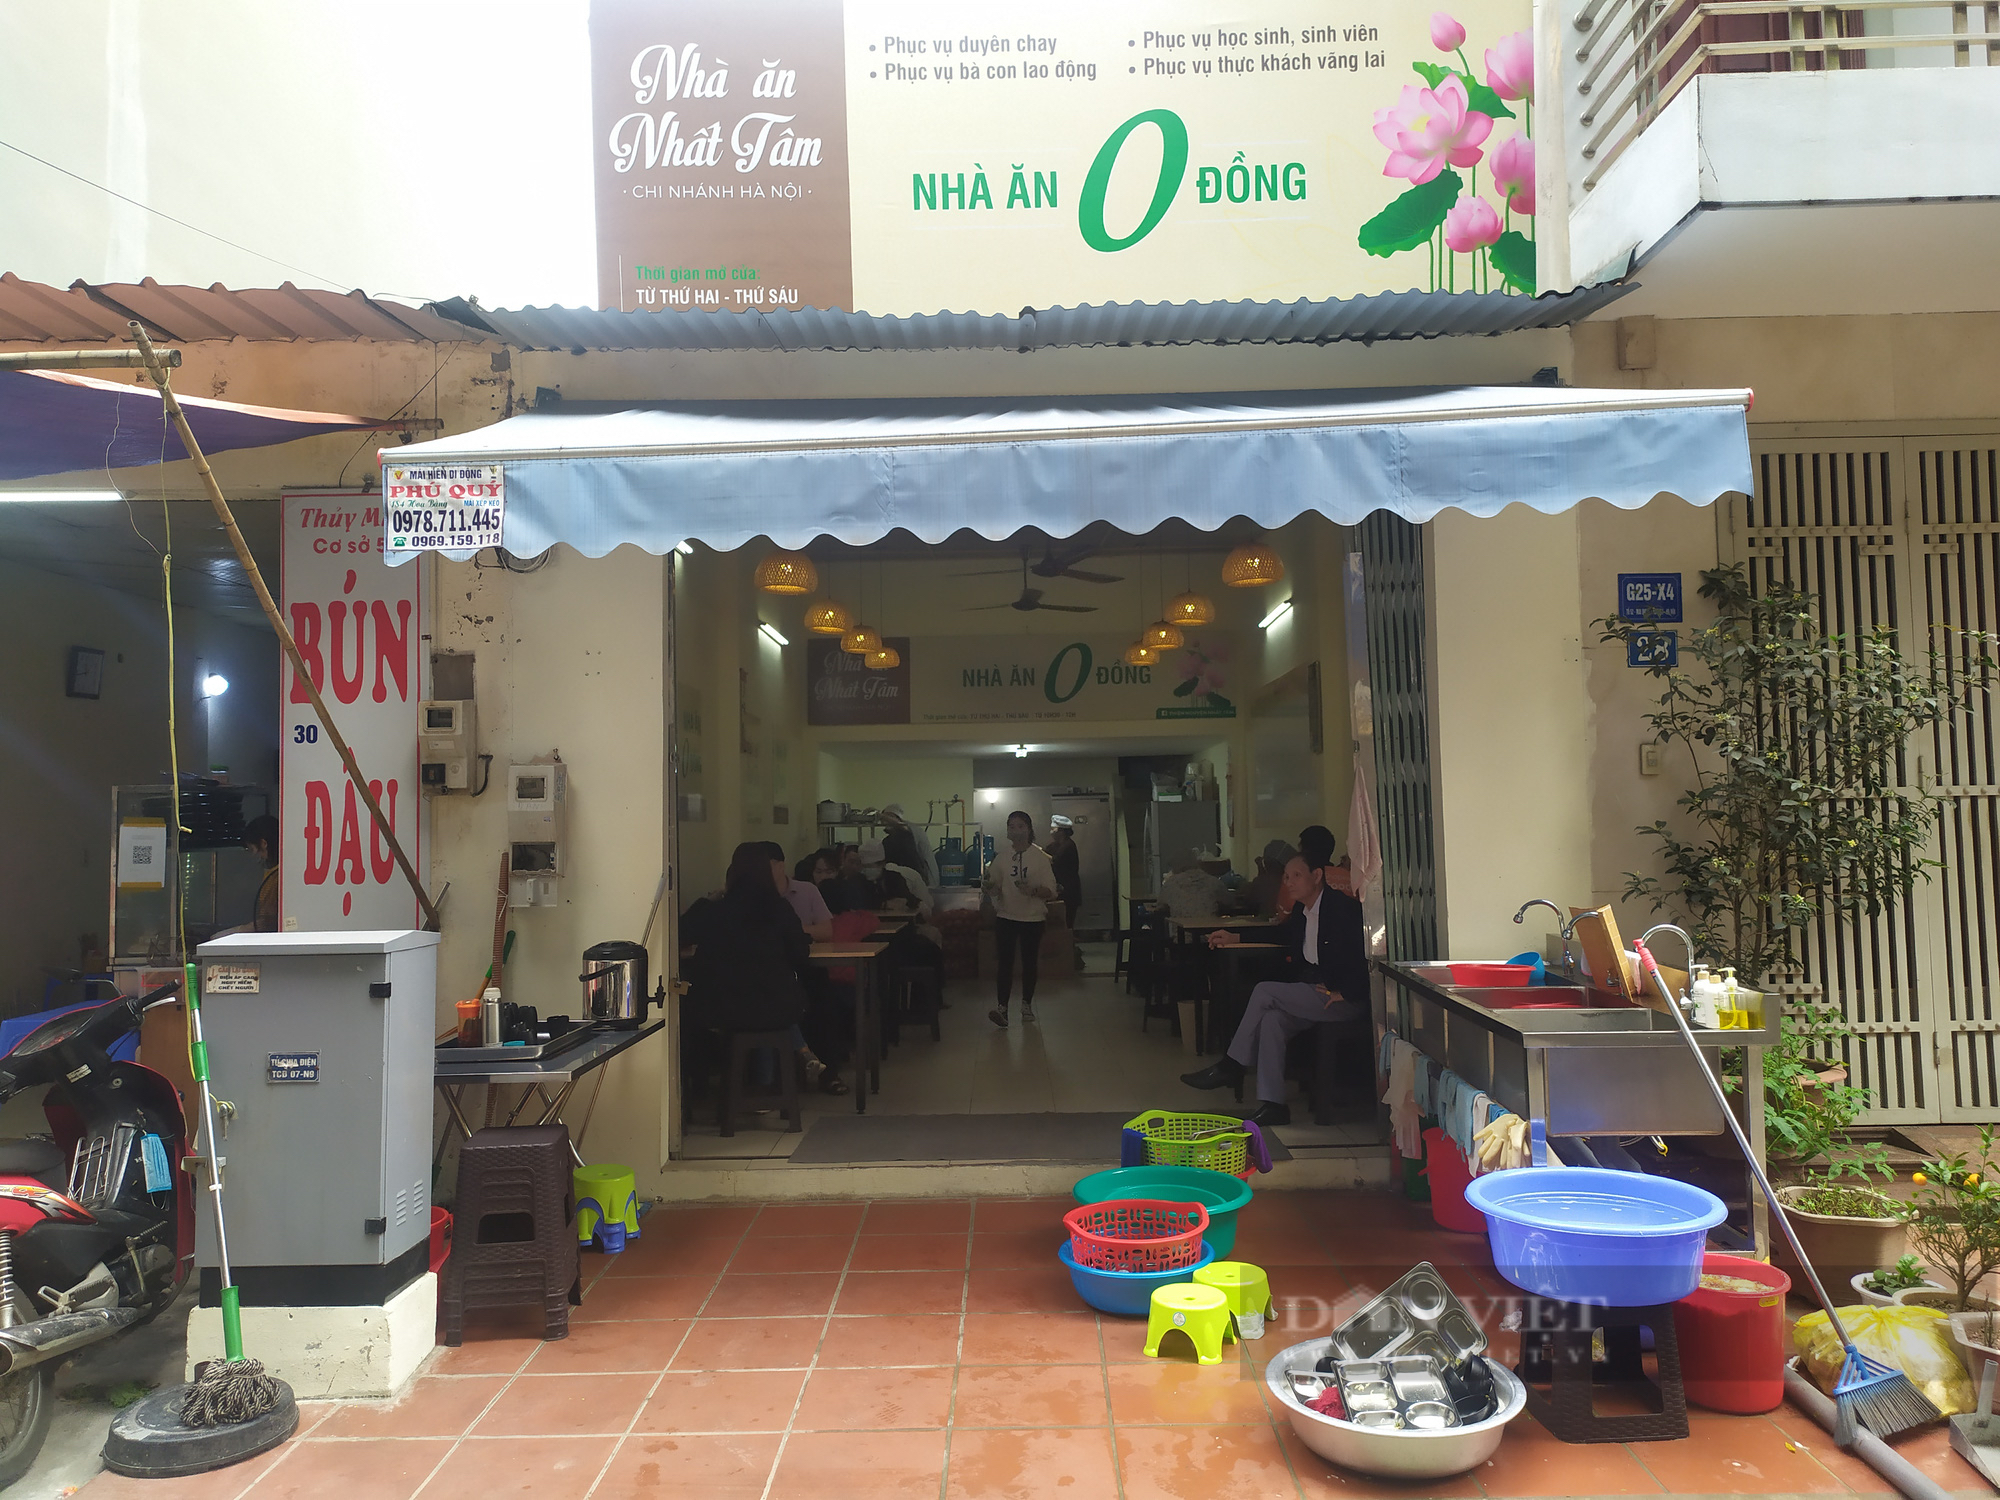 Quán chay 0 đồng phục vụ hàng trăm suất ăn mỗi ngày giữa lòng Thủ đô Hà Nội - Ảnh 2.